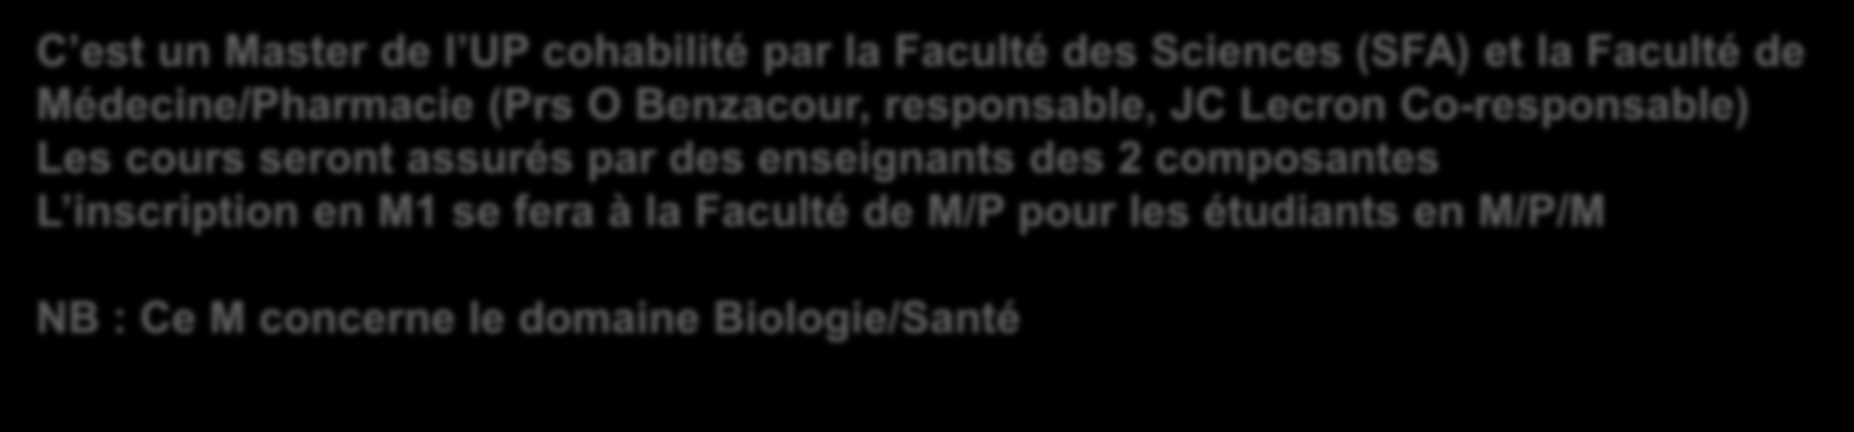 Le Master Biologie Santé, Sciences du Médicament (MBSSM) de l université de Poitiers, parcours Physiologie, Neurosciences, Biologie cellulaire et Moléculaire (PNBCM) 2012-2017 C est un Master de l UP